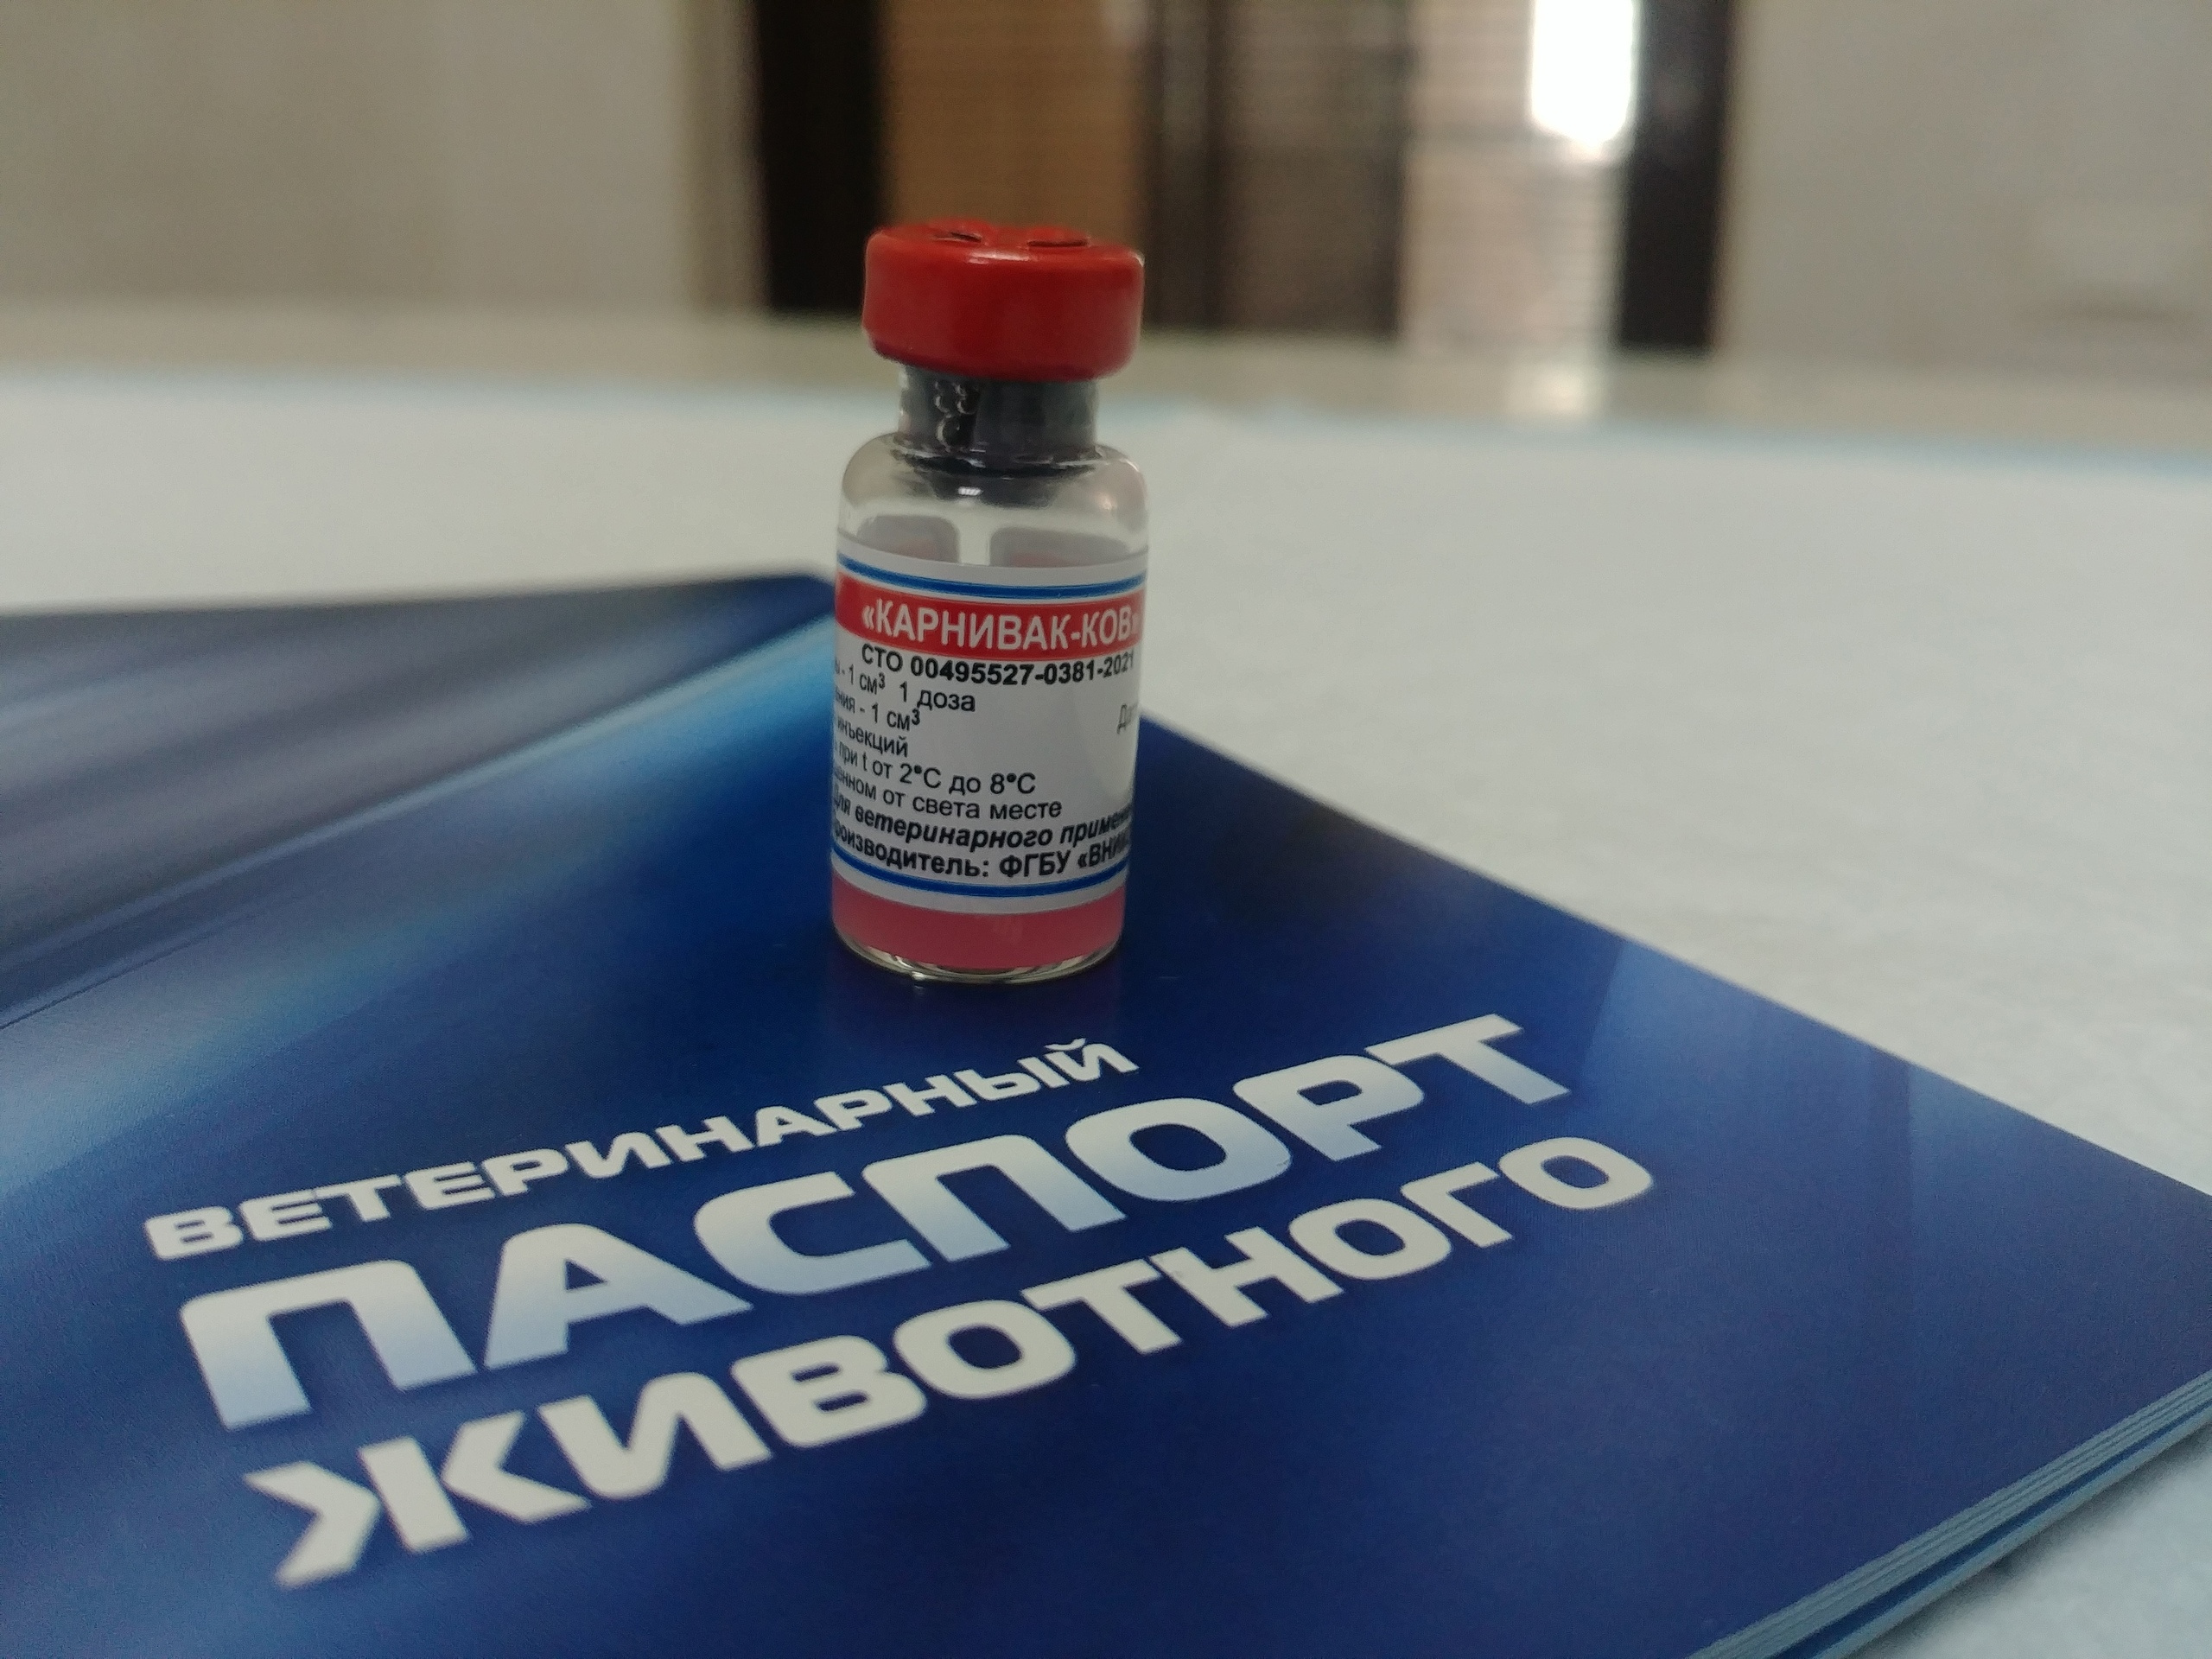 Обычно один флакончик этой вакцины стоит около 400 рублей, а в дни акции прививку можно поставить бесплатно